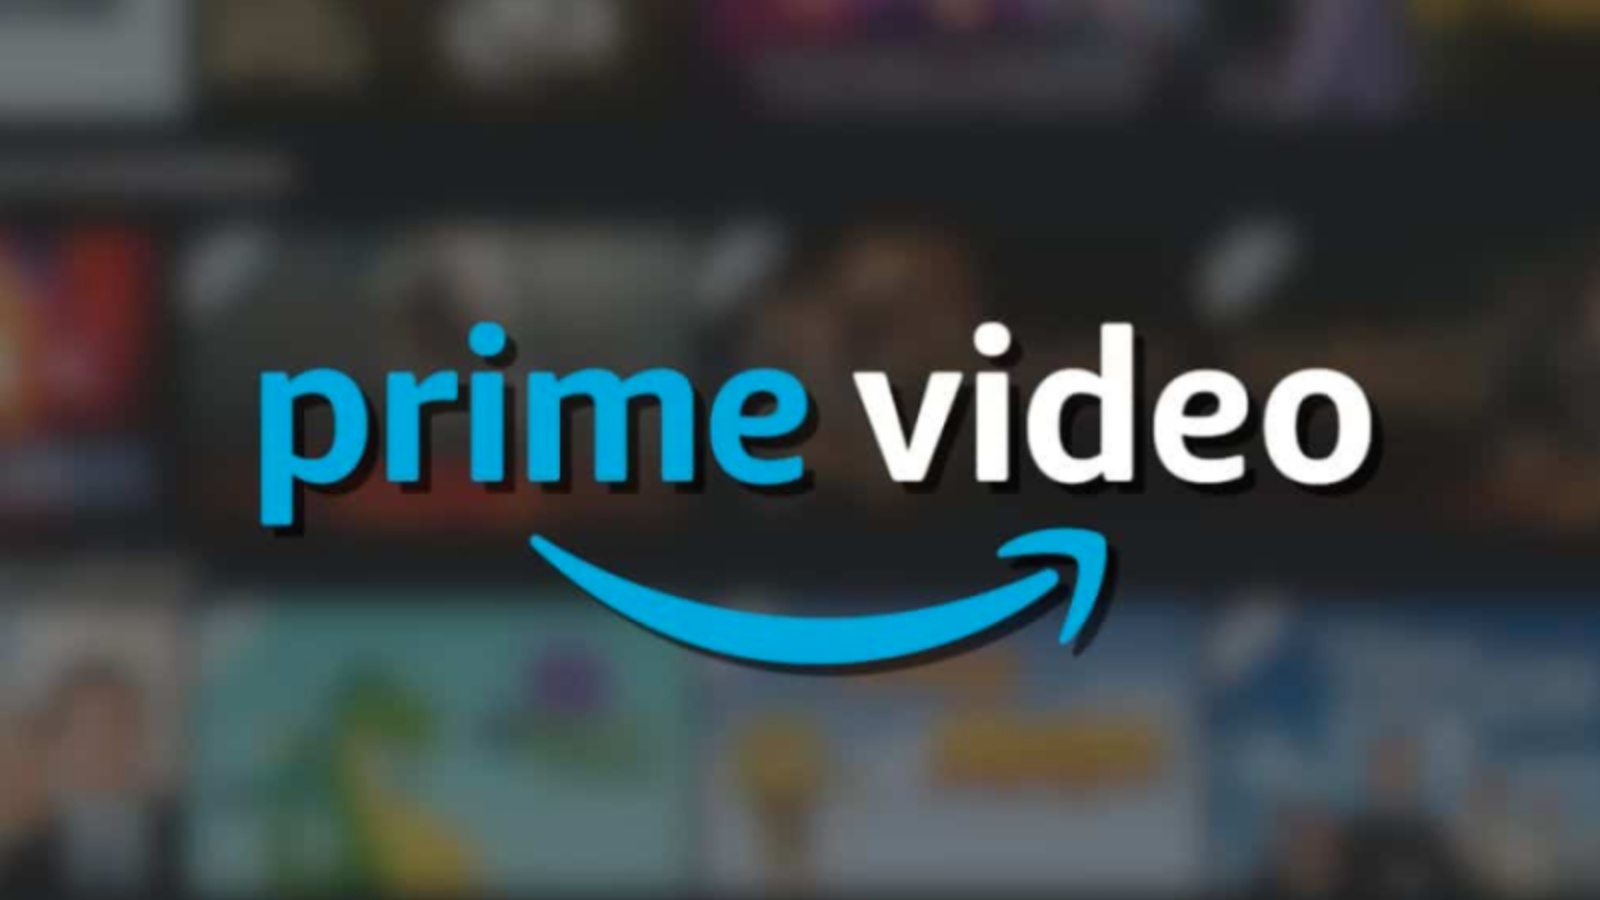 Prime Video aggiungerà gli annunci pubblicitari a partire dal 29 gennaio